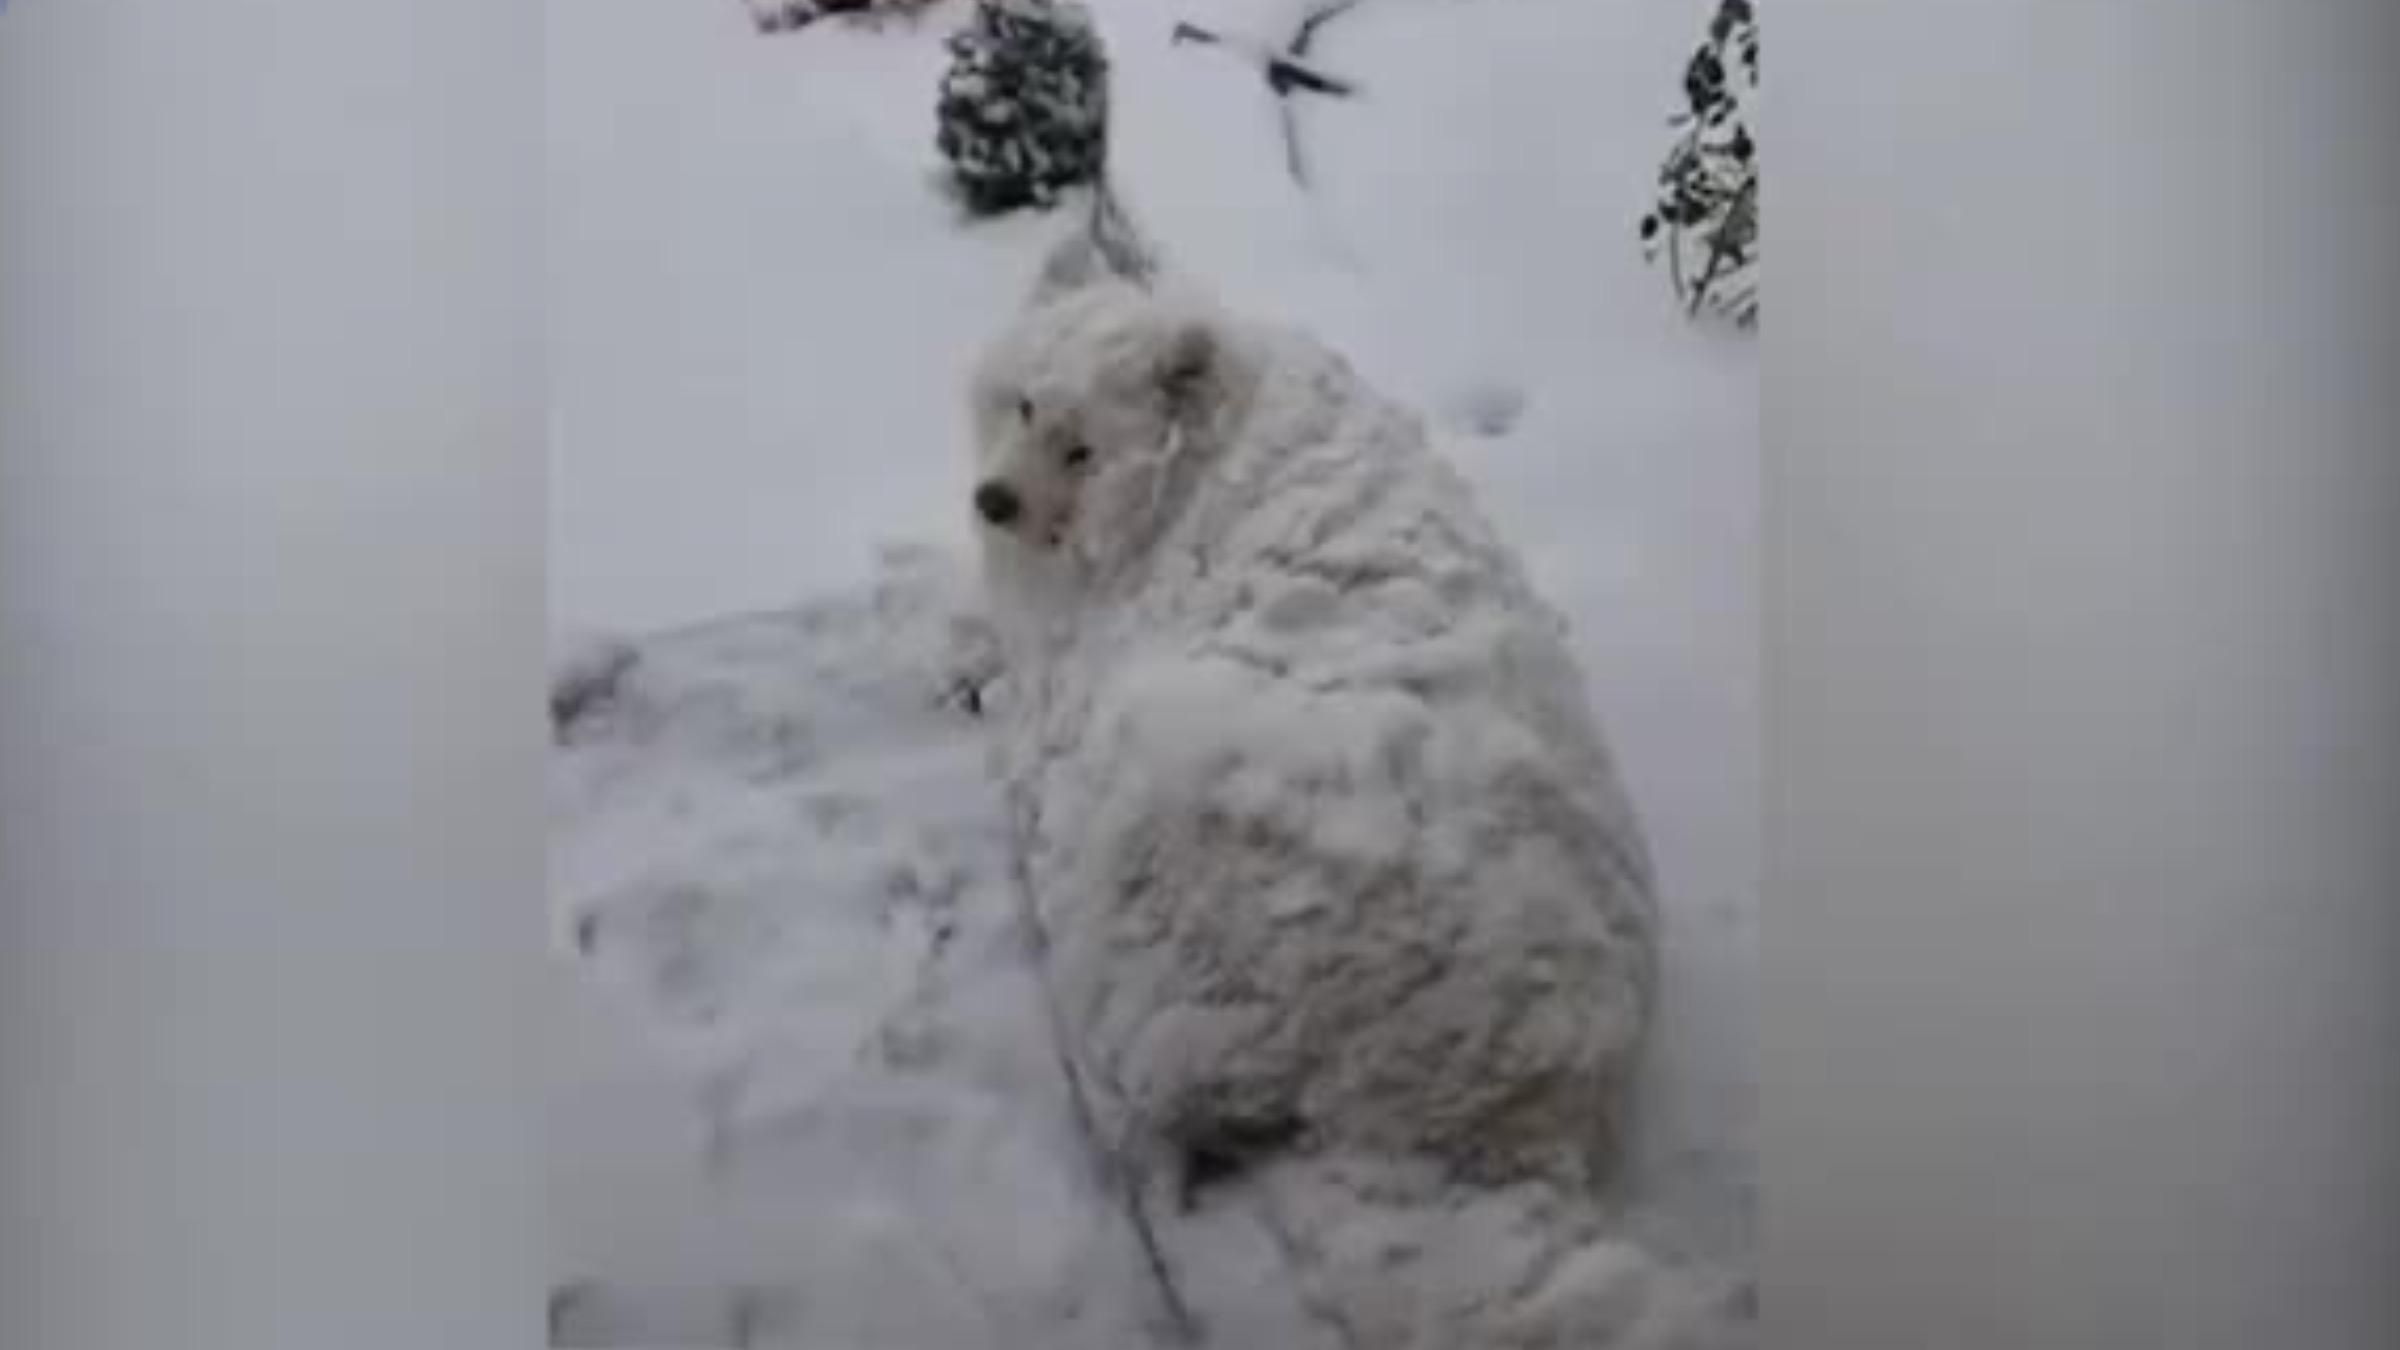 Стал пушистым сугробом снега: забавное видео с собакой, которая любит зиму - Pets